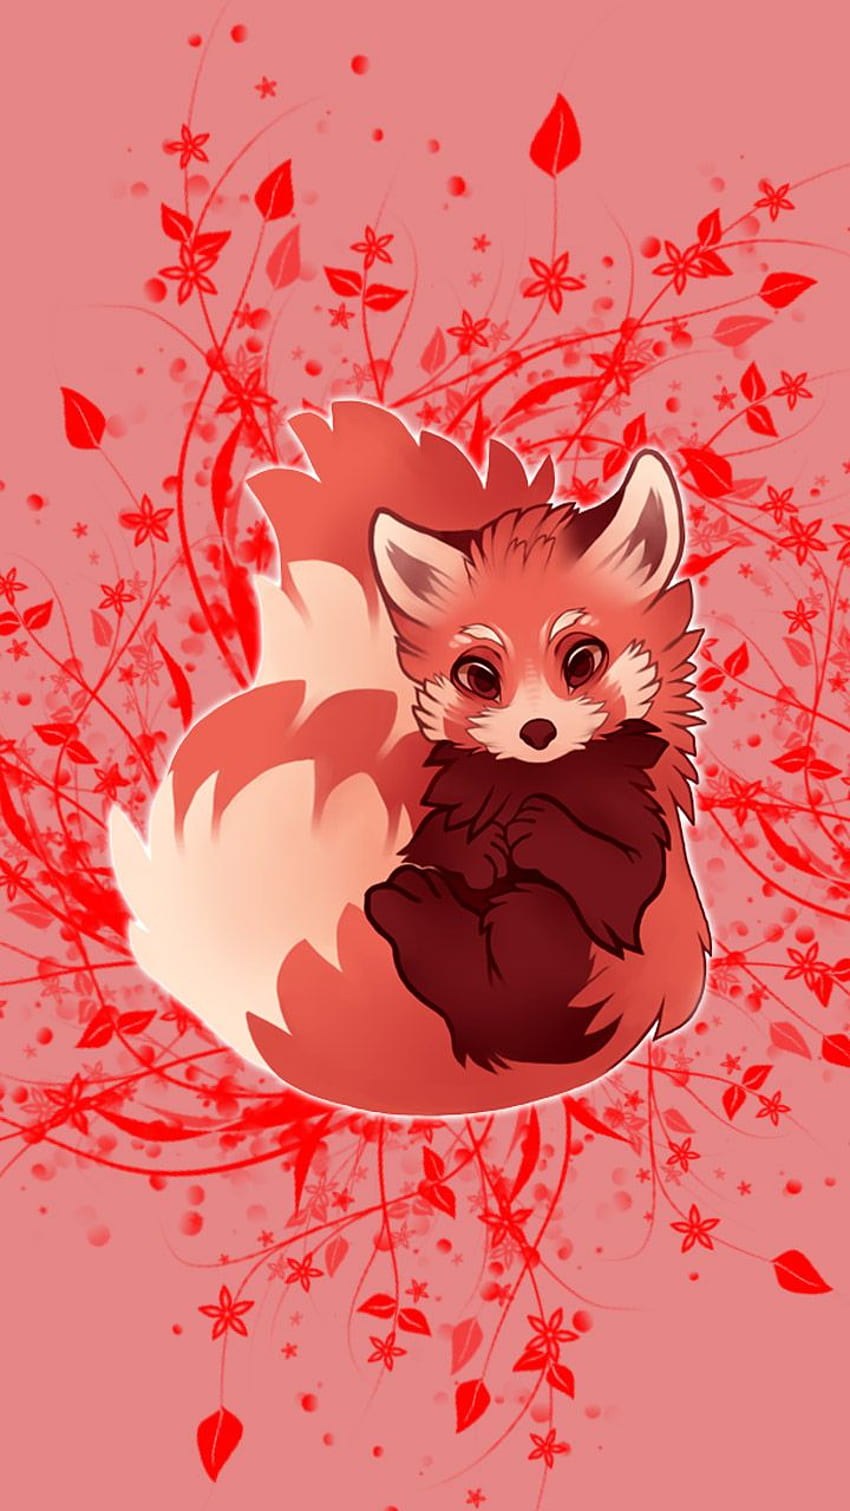 kartun panda merah, Red Panda Kawaii wallpaper ponsel HD